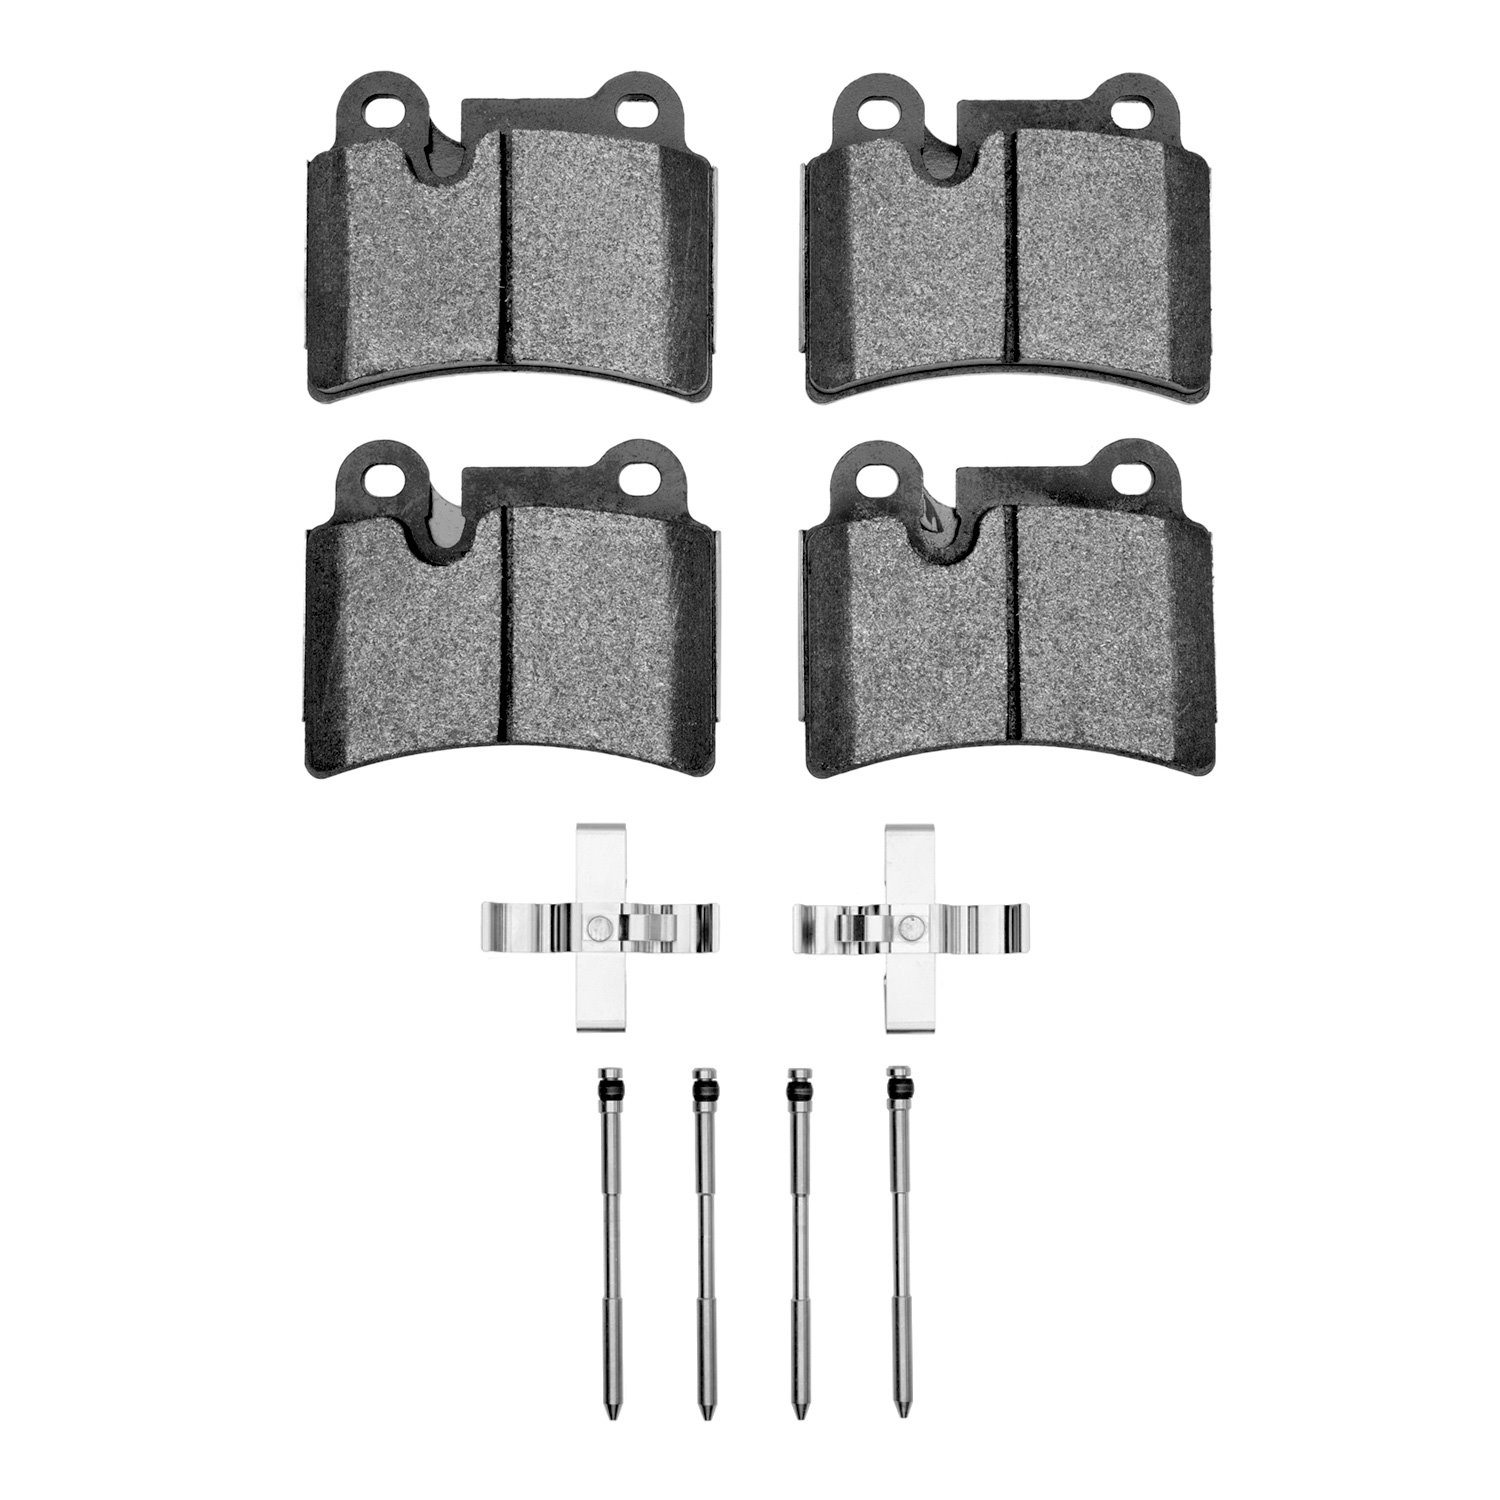 1551-1277-01 5000 Advanced Low-Metallic Brake Pads & Hardware Kit, 2008-2009 Audi/Volkswagen, Position: Rear